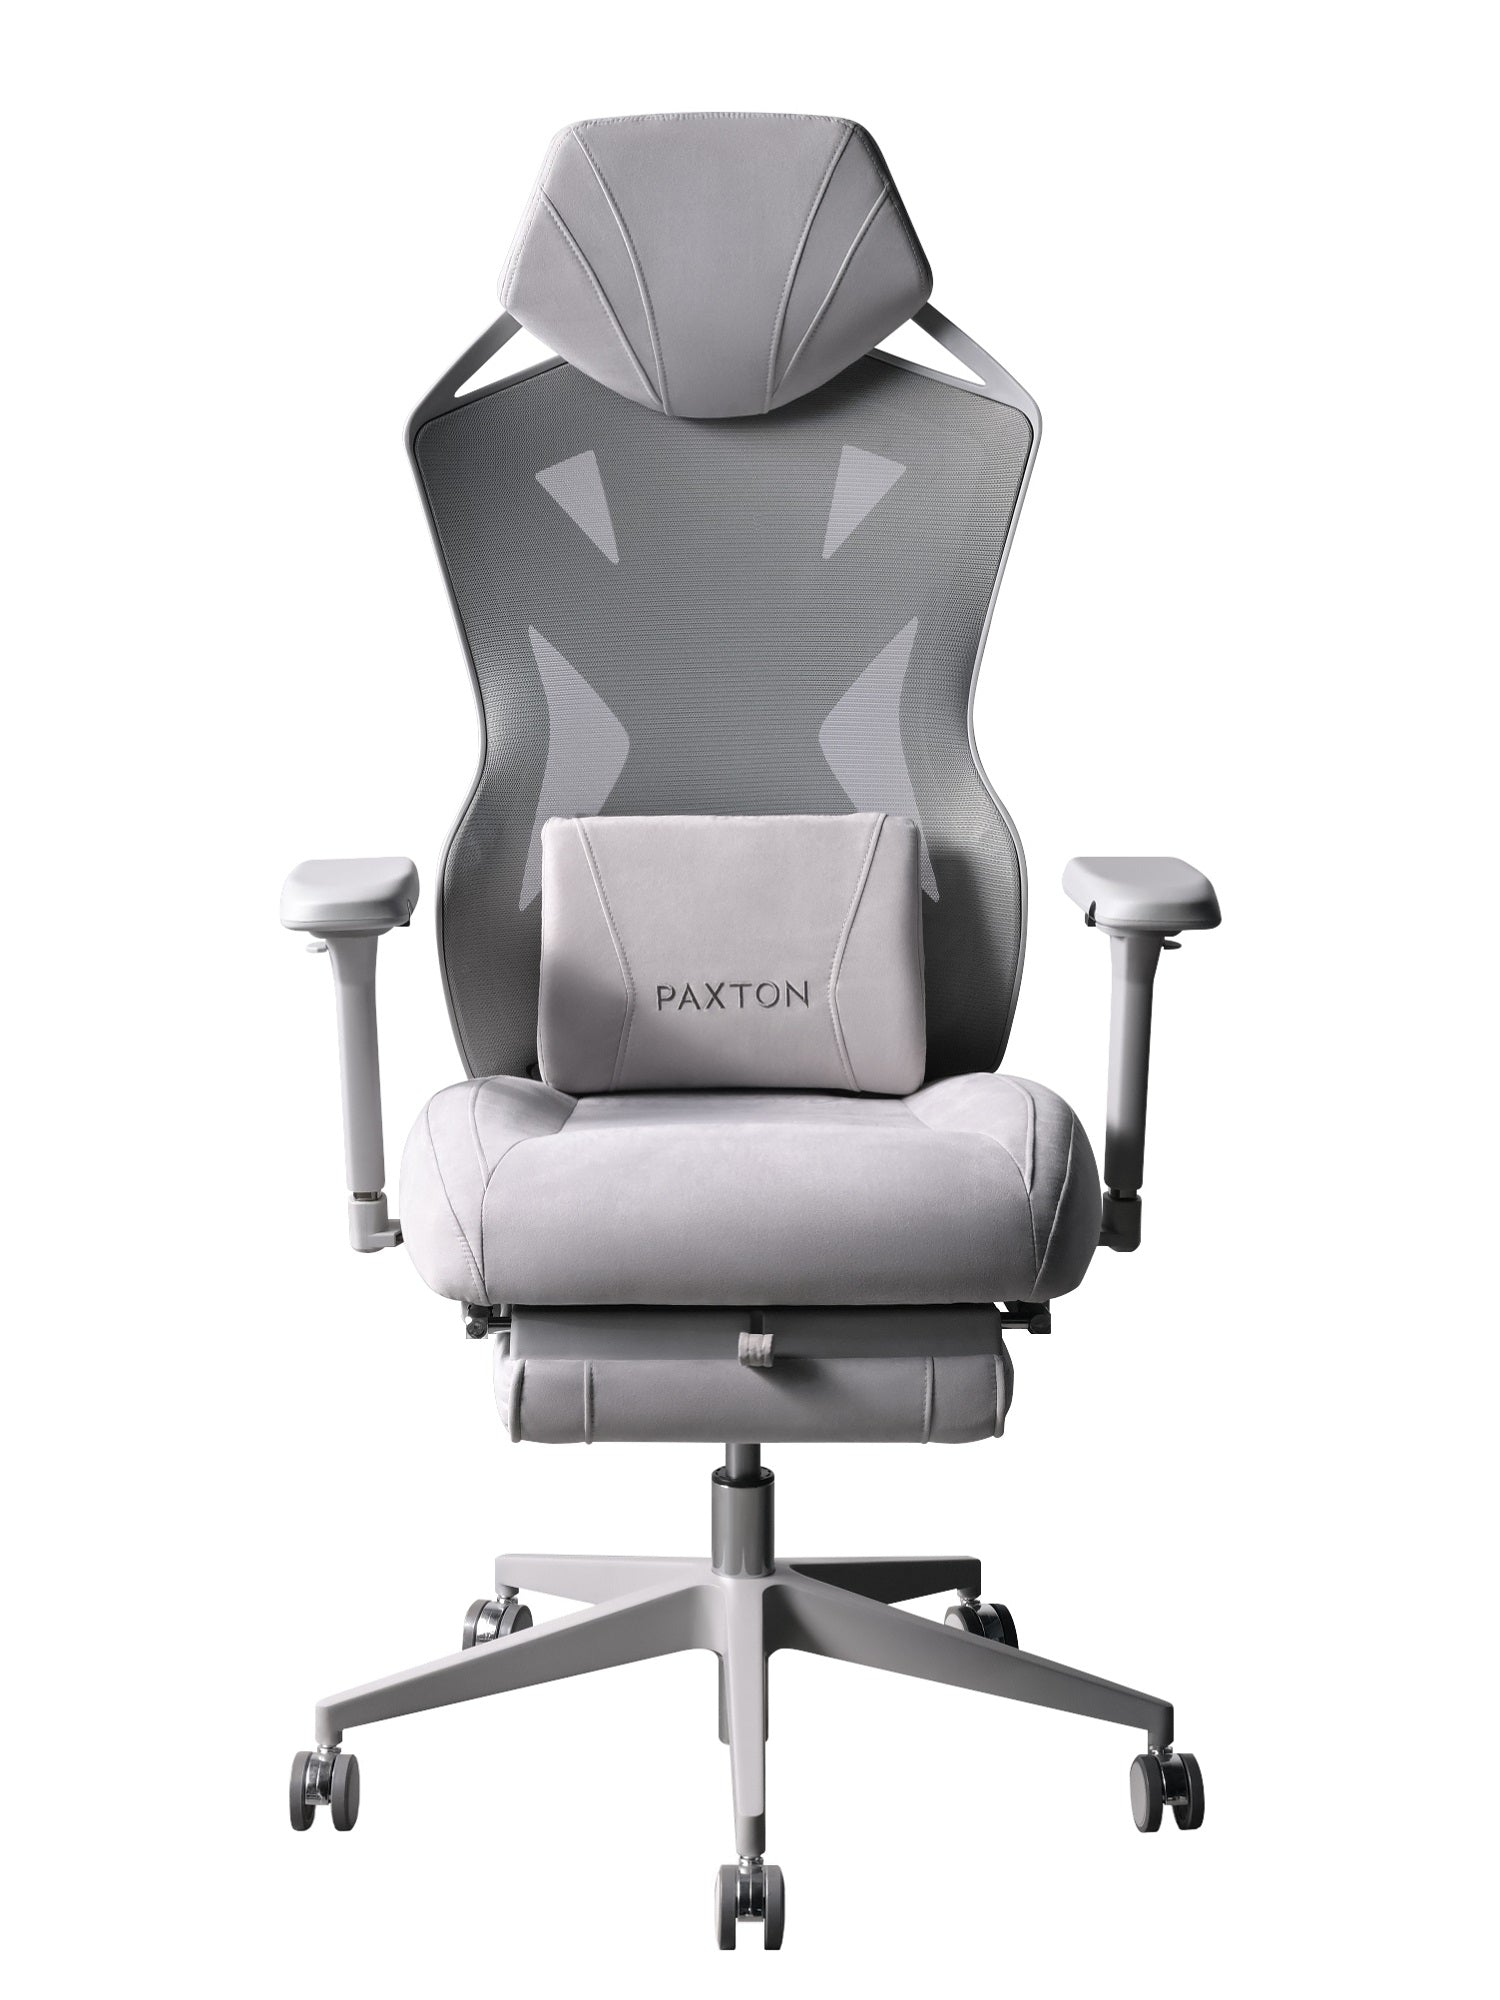 ゲーミングチェア PAXTON Paris - 椅子